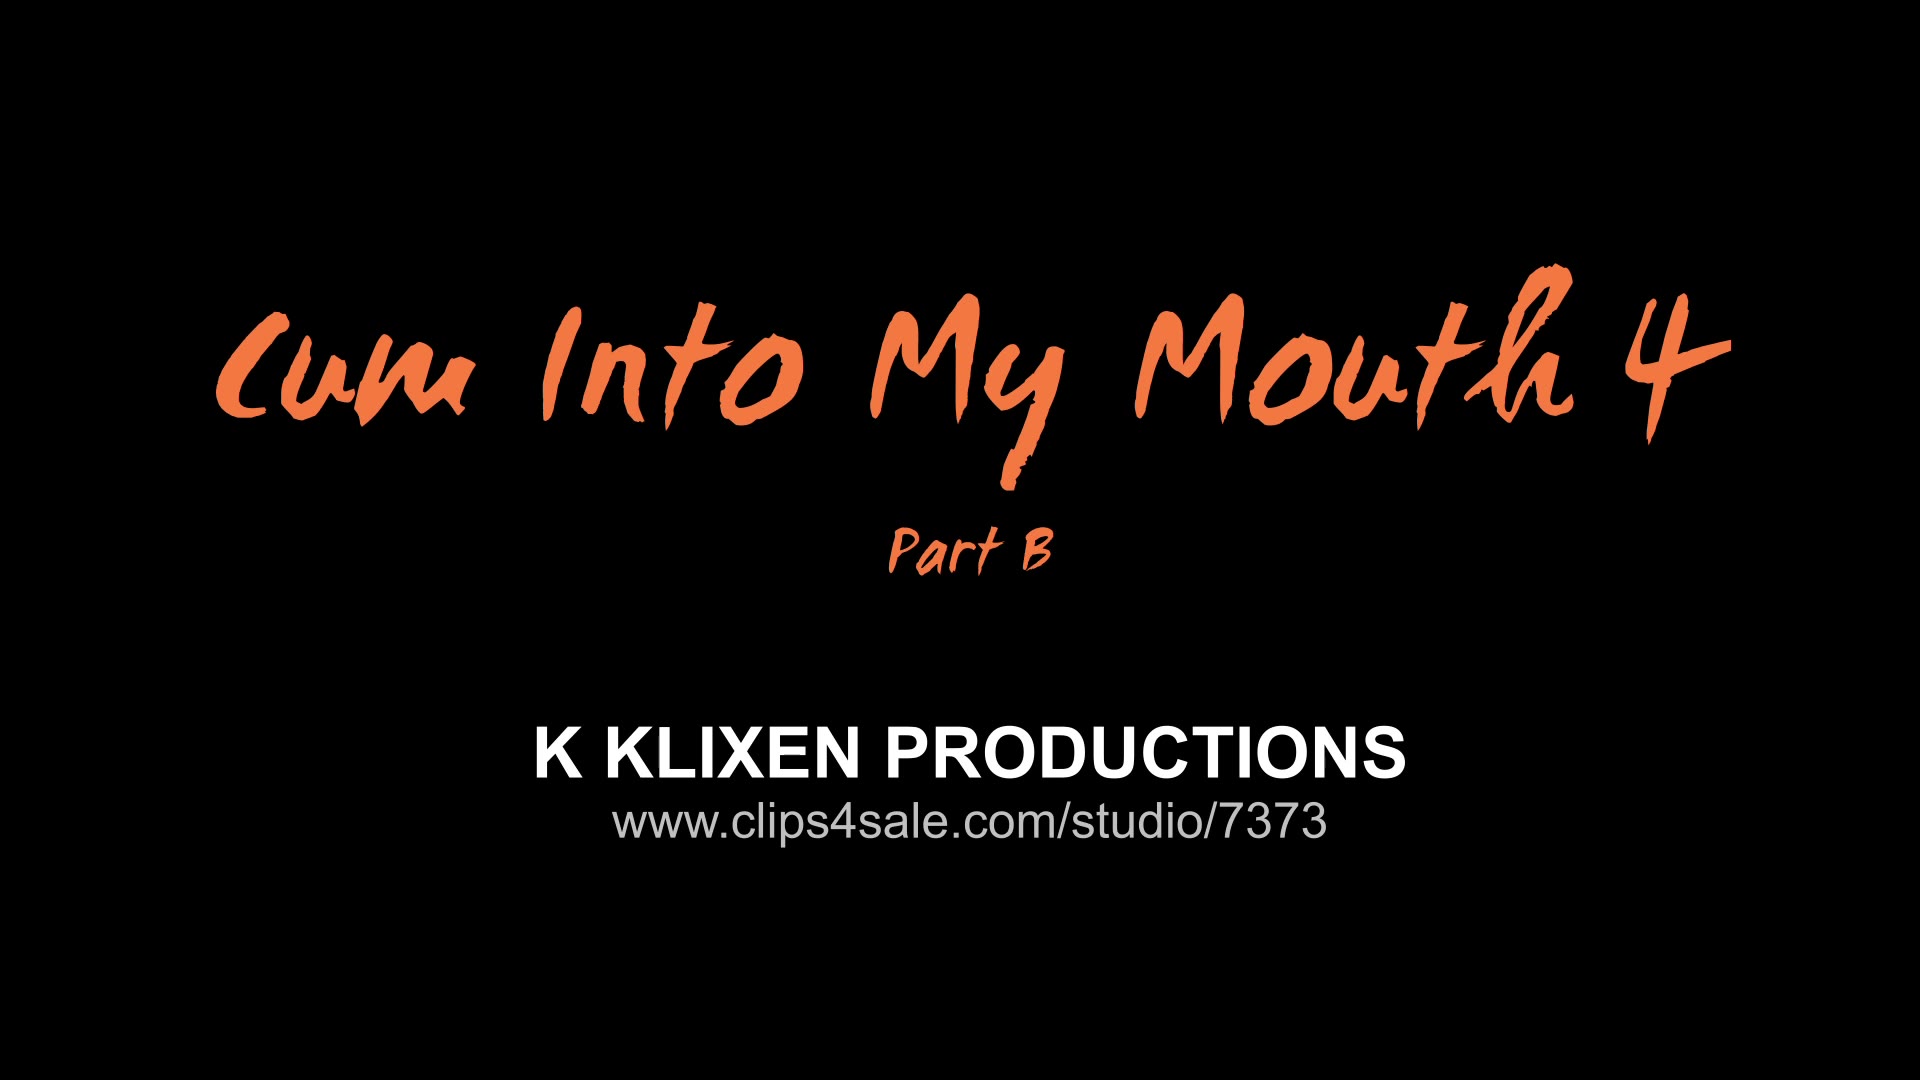 Download Klixen Productions Cum Into Mouth Shona River Part